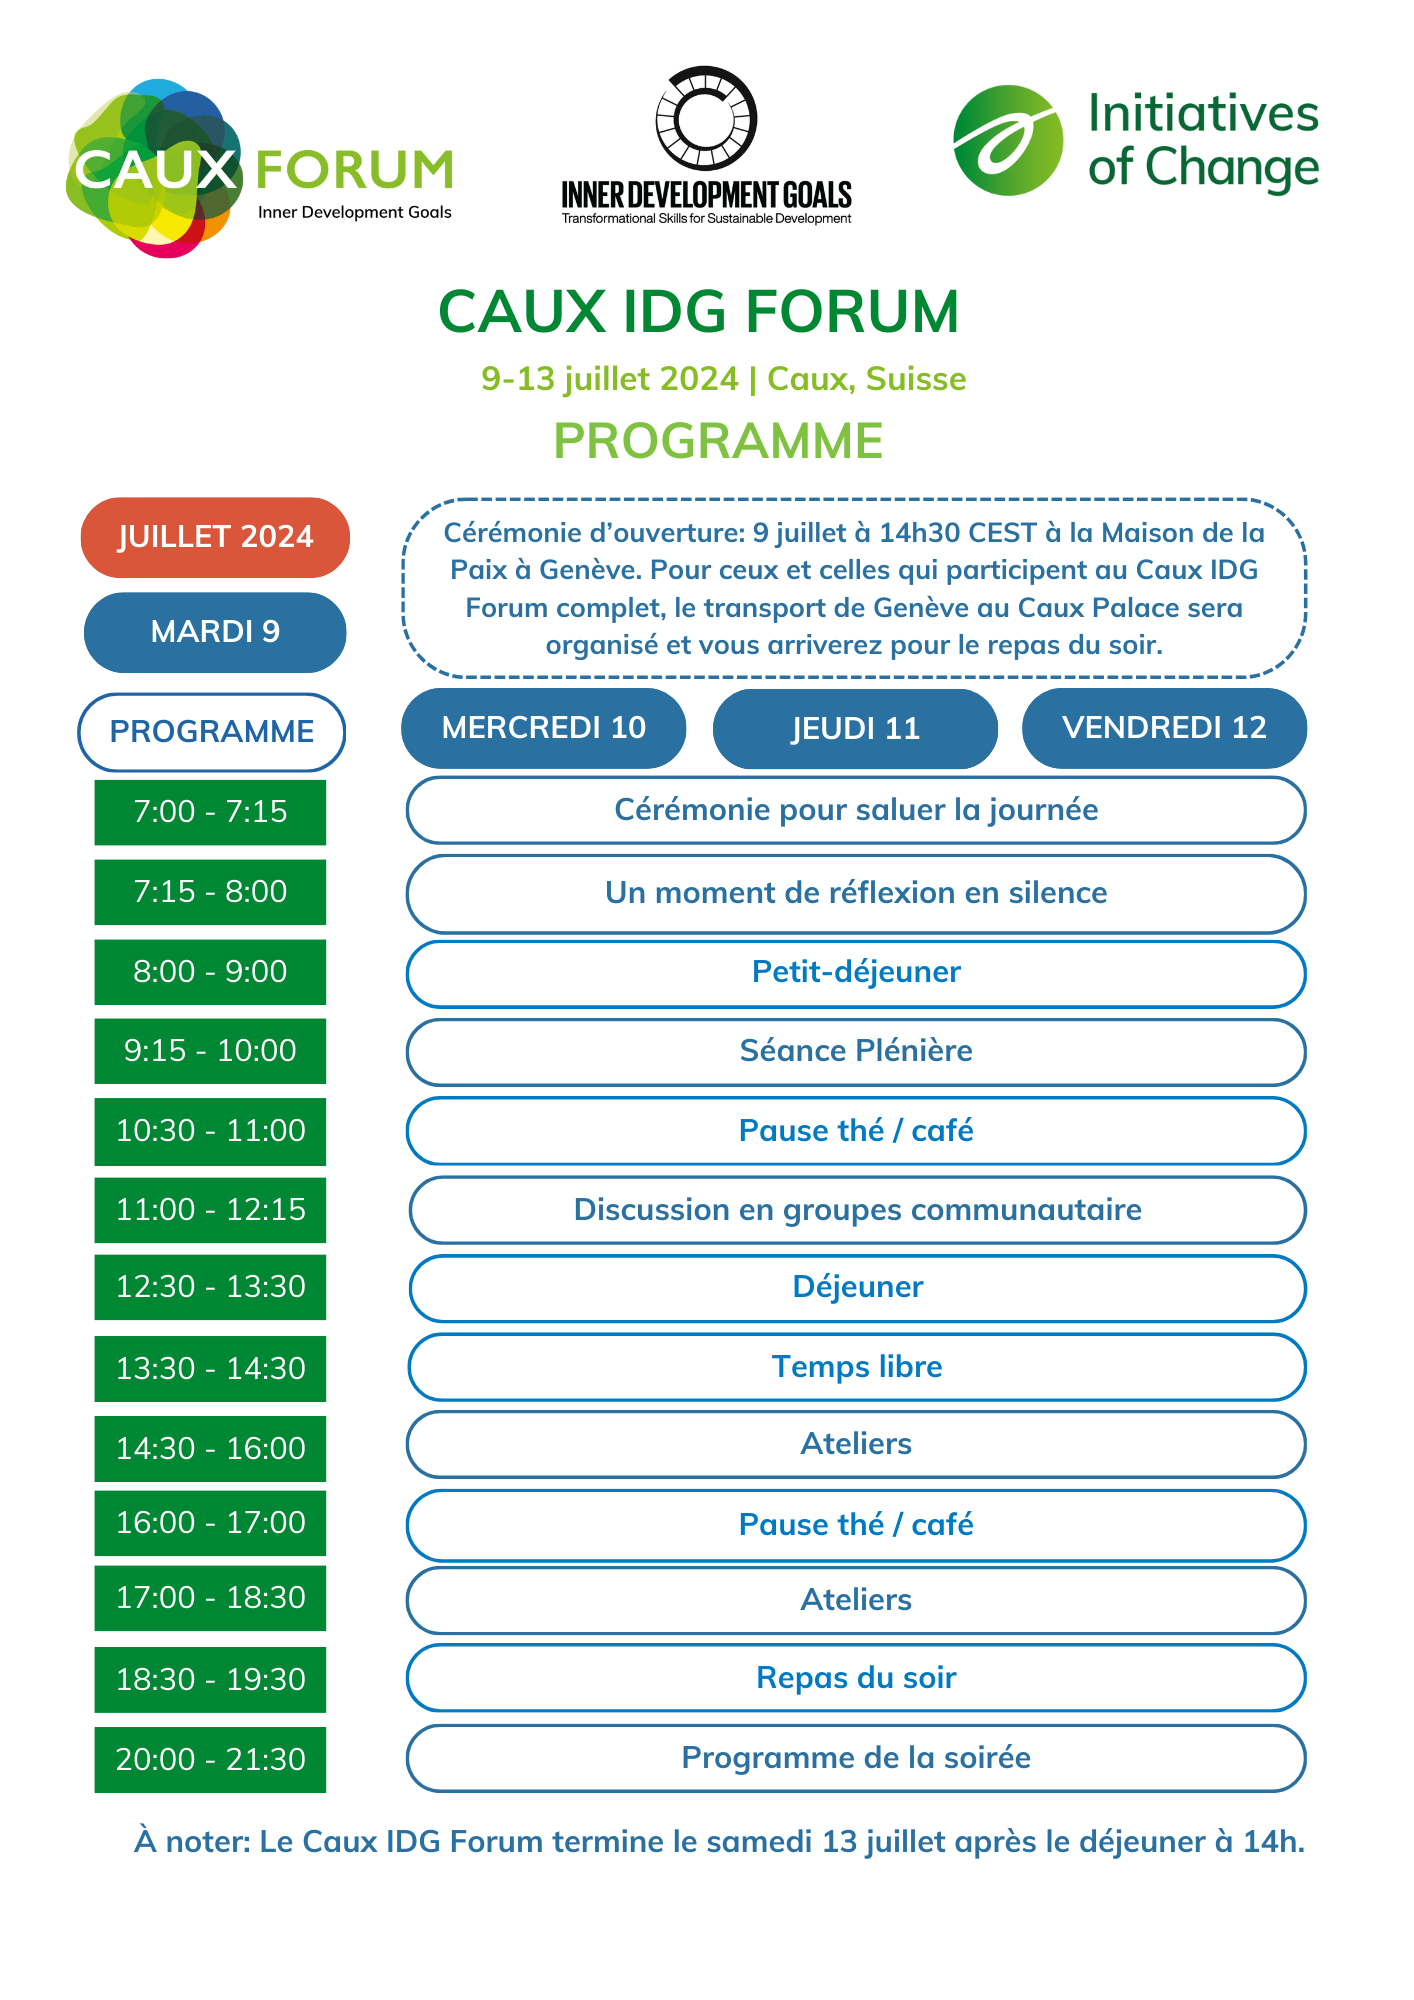 Caux IDG Forum schedule FR